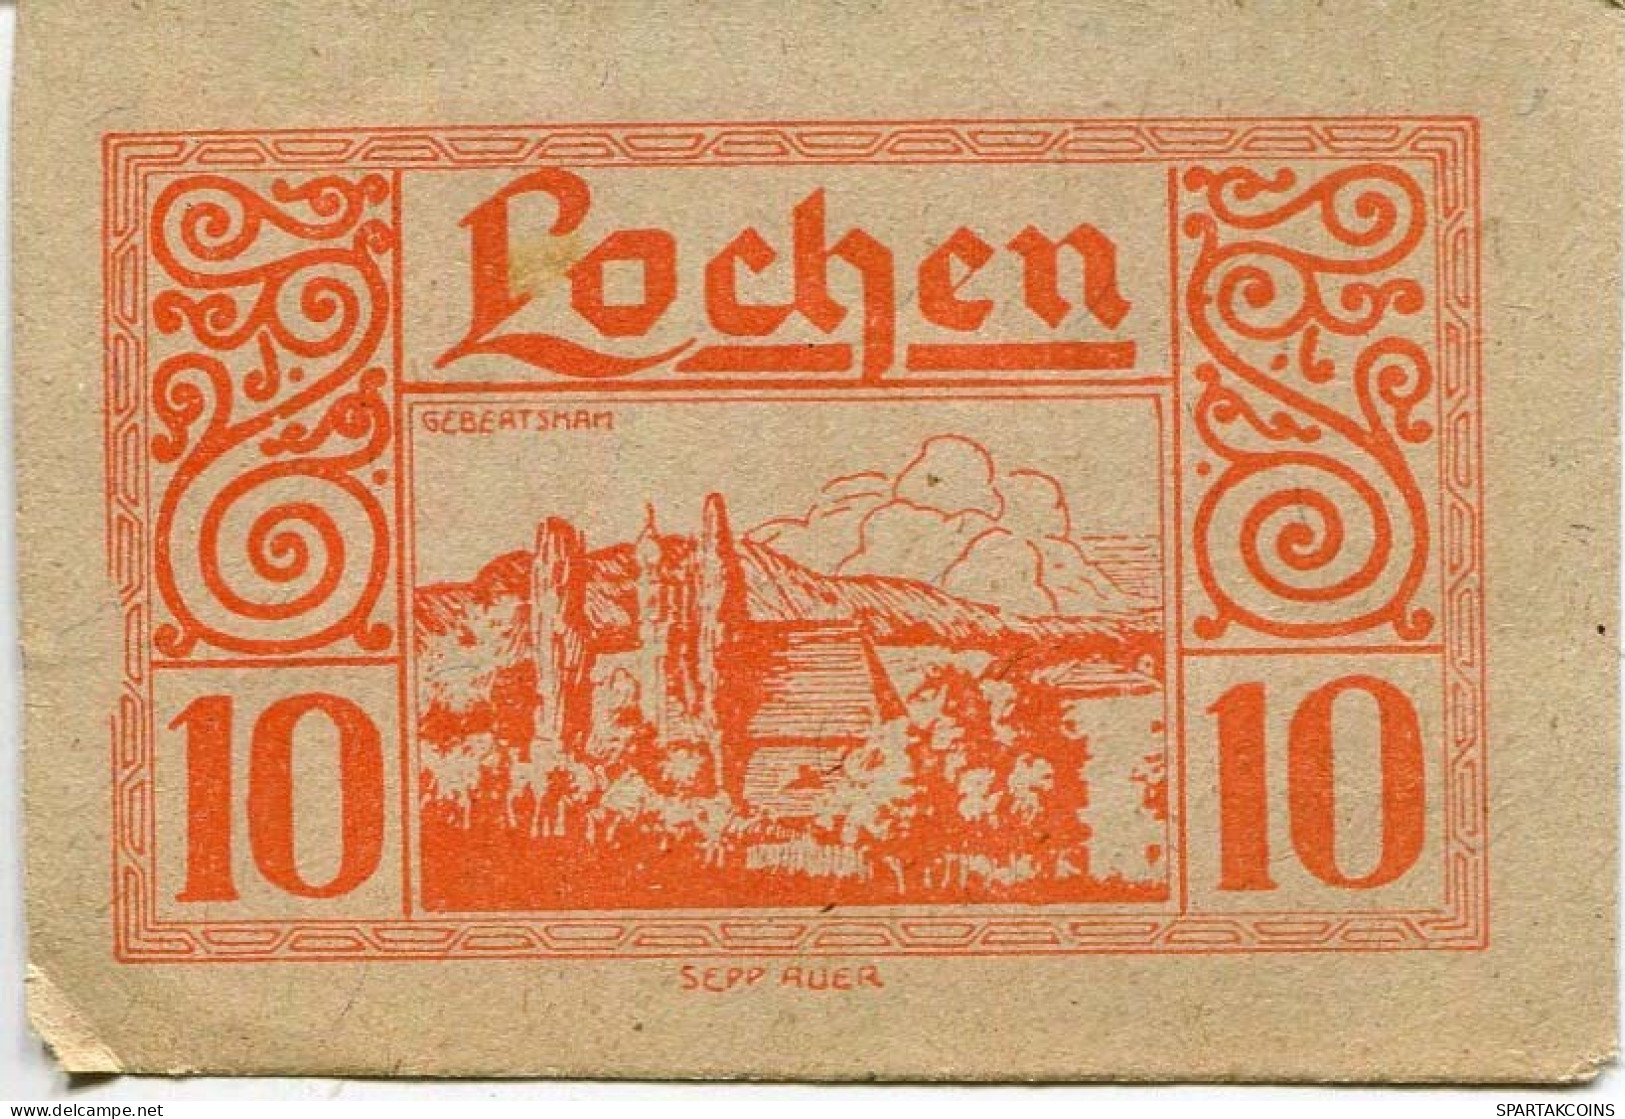 10 HELLER 1920 Stadt LOCHEN Oberösterreich Österreich Notgeld Papiergeld Banknote #PL714 - [11] Local Banknote Issues